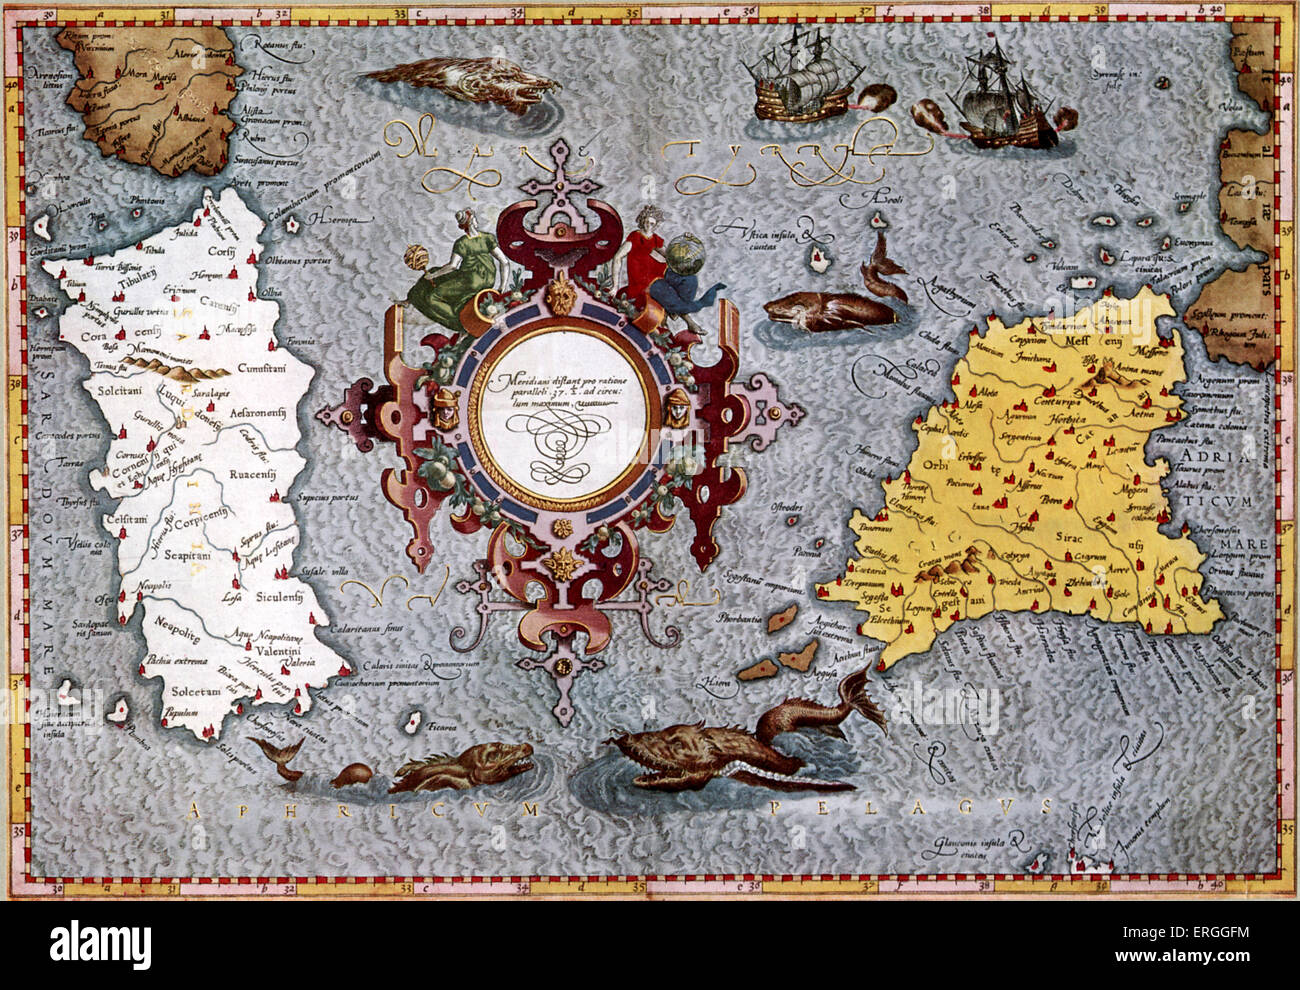 Mappa della Sardegna e Sicilia da Mercator. Pubblicato in Tolomeo 's 'geographica", 1584, Colonia. (Titolo: Ptolemaei Alexandrini Foto Stock